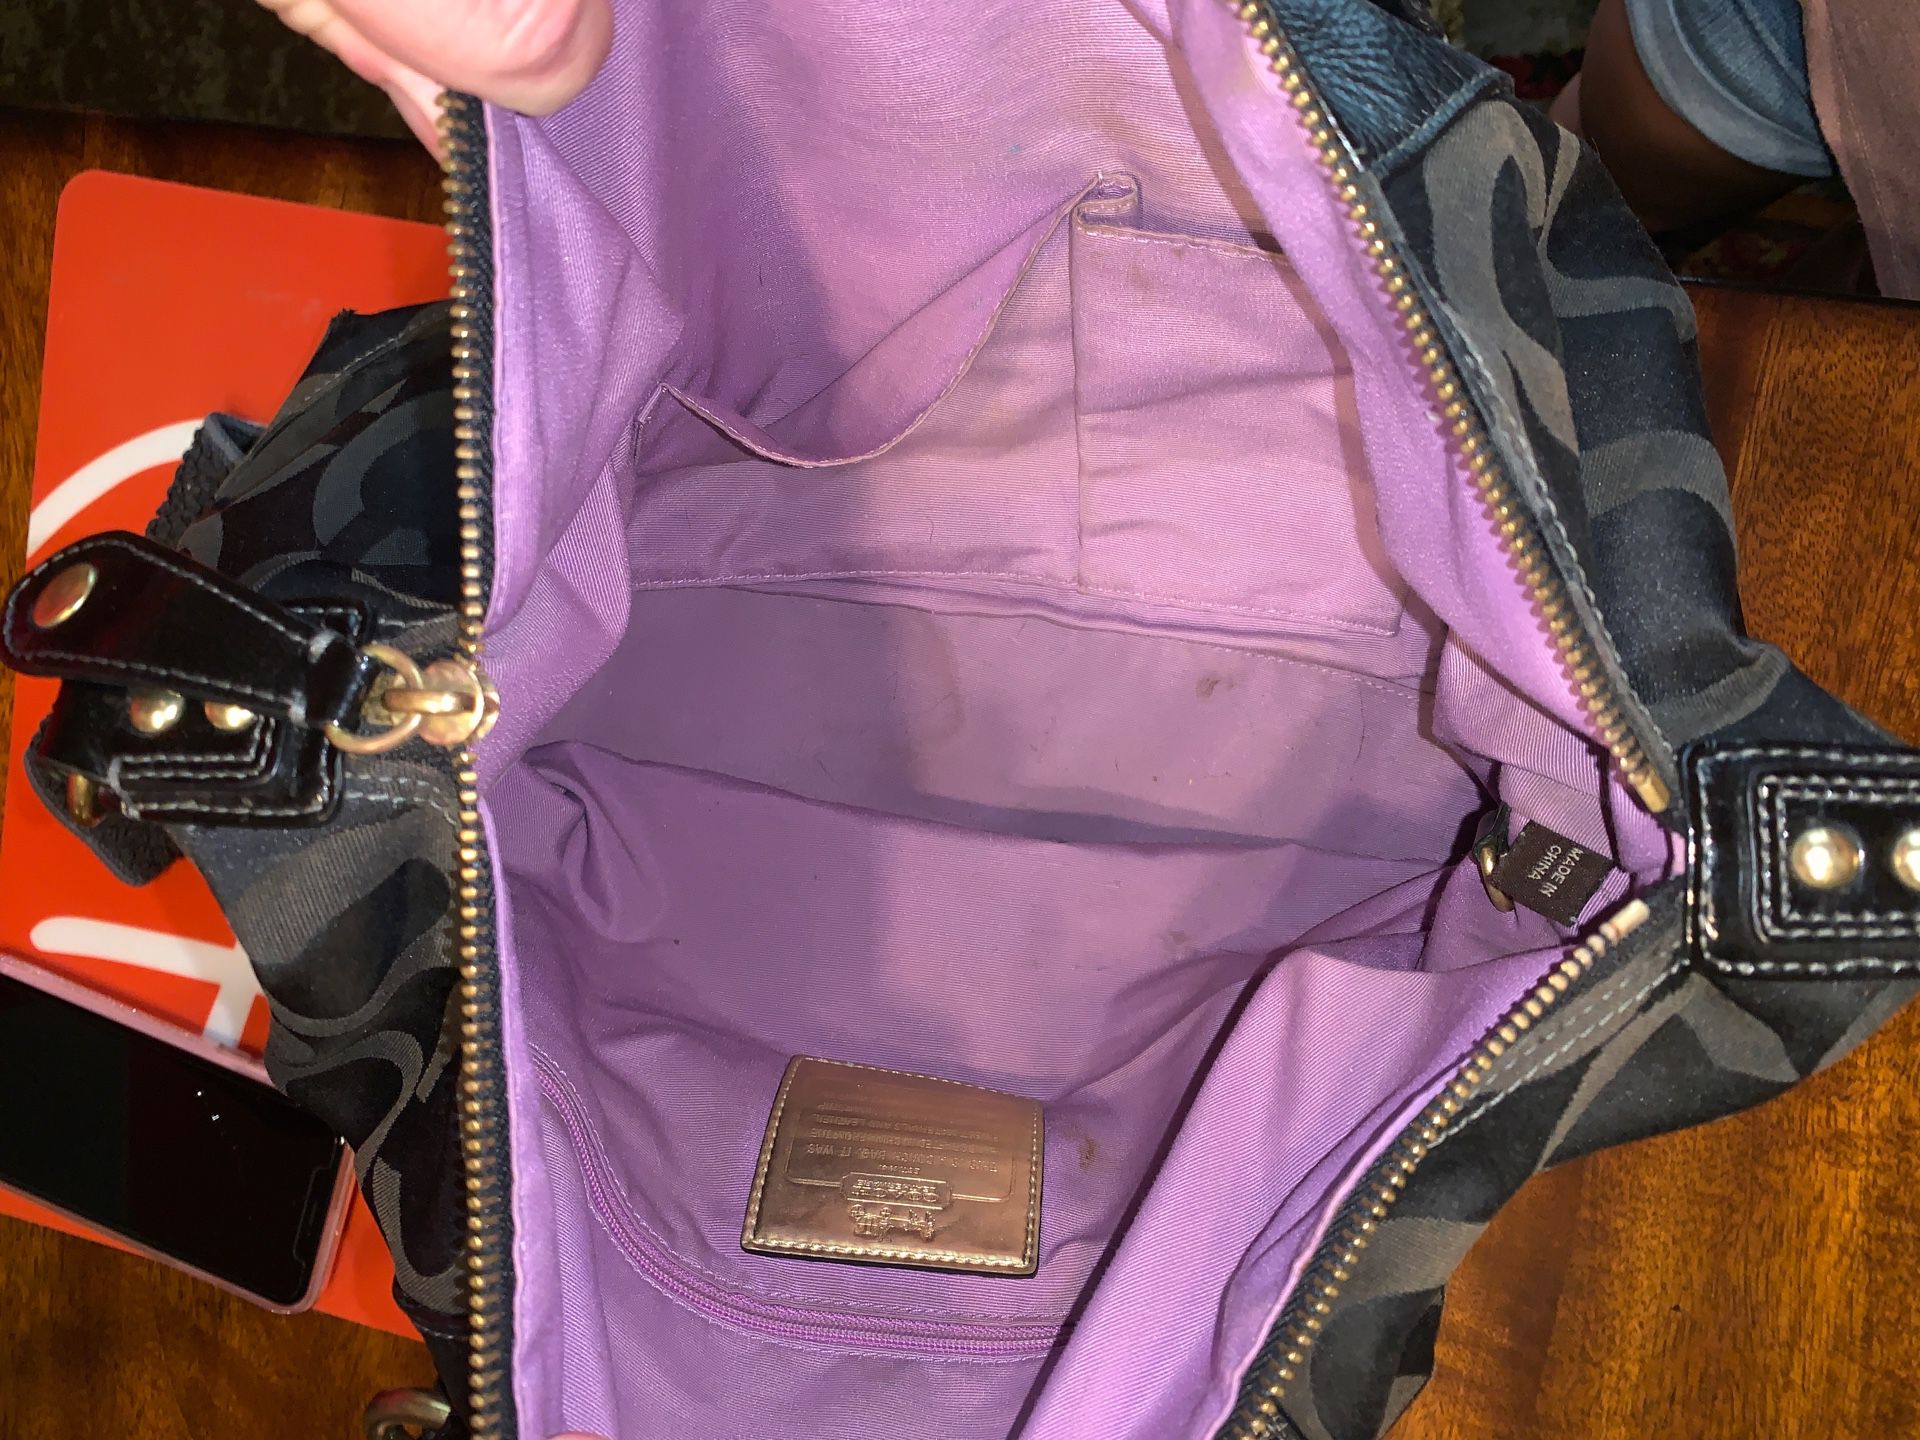 Coach Bennett Mini Satchel Bag for Sale in Lynnwood, WA - OfferUp